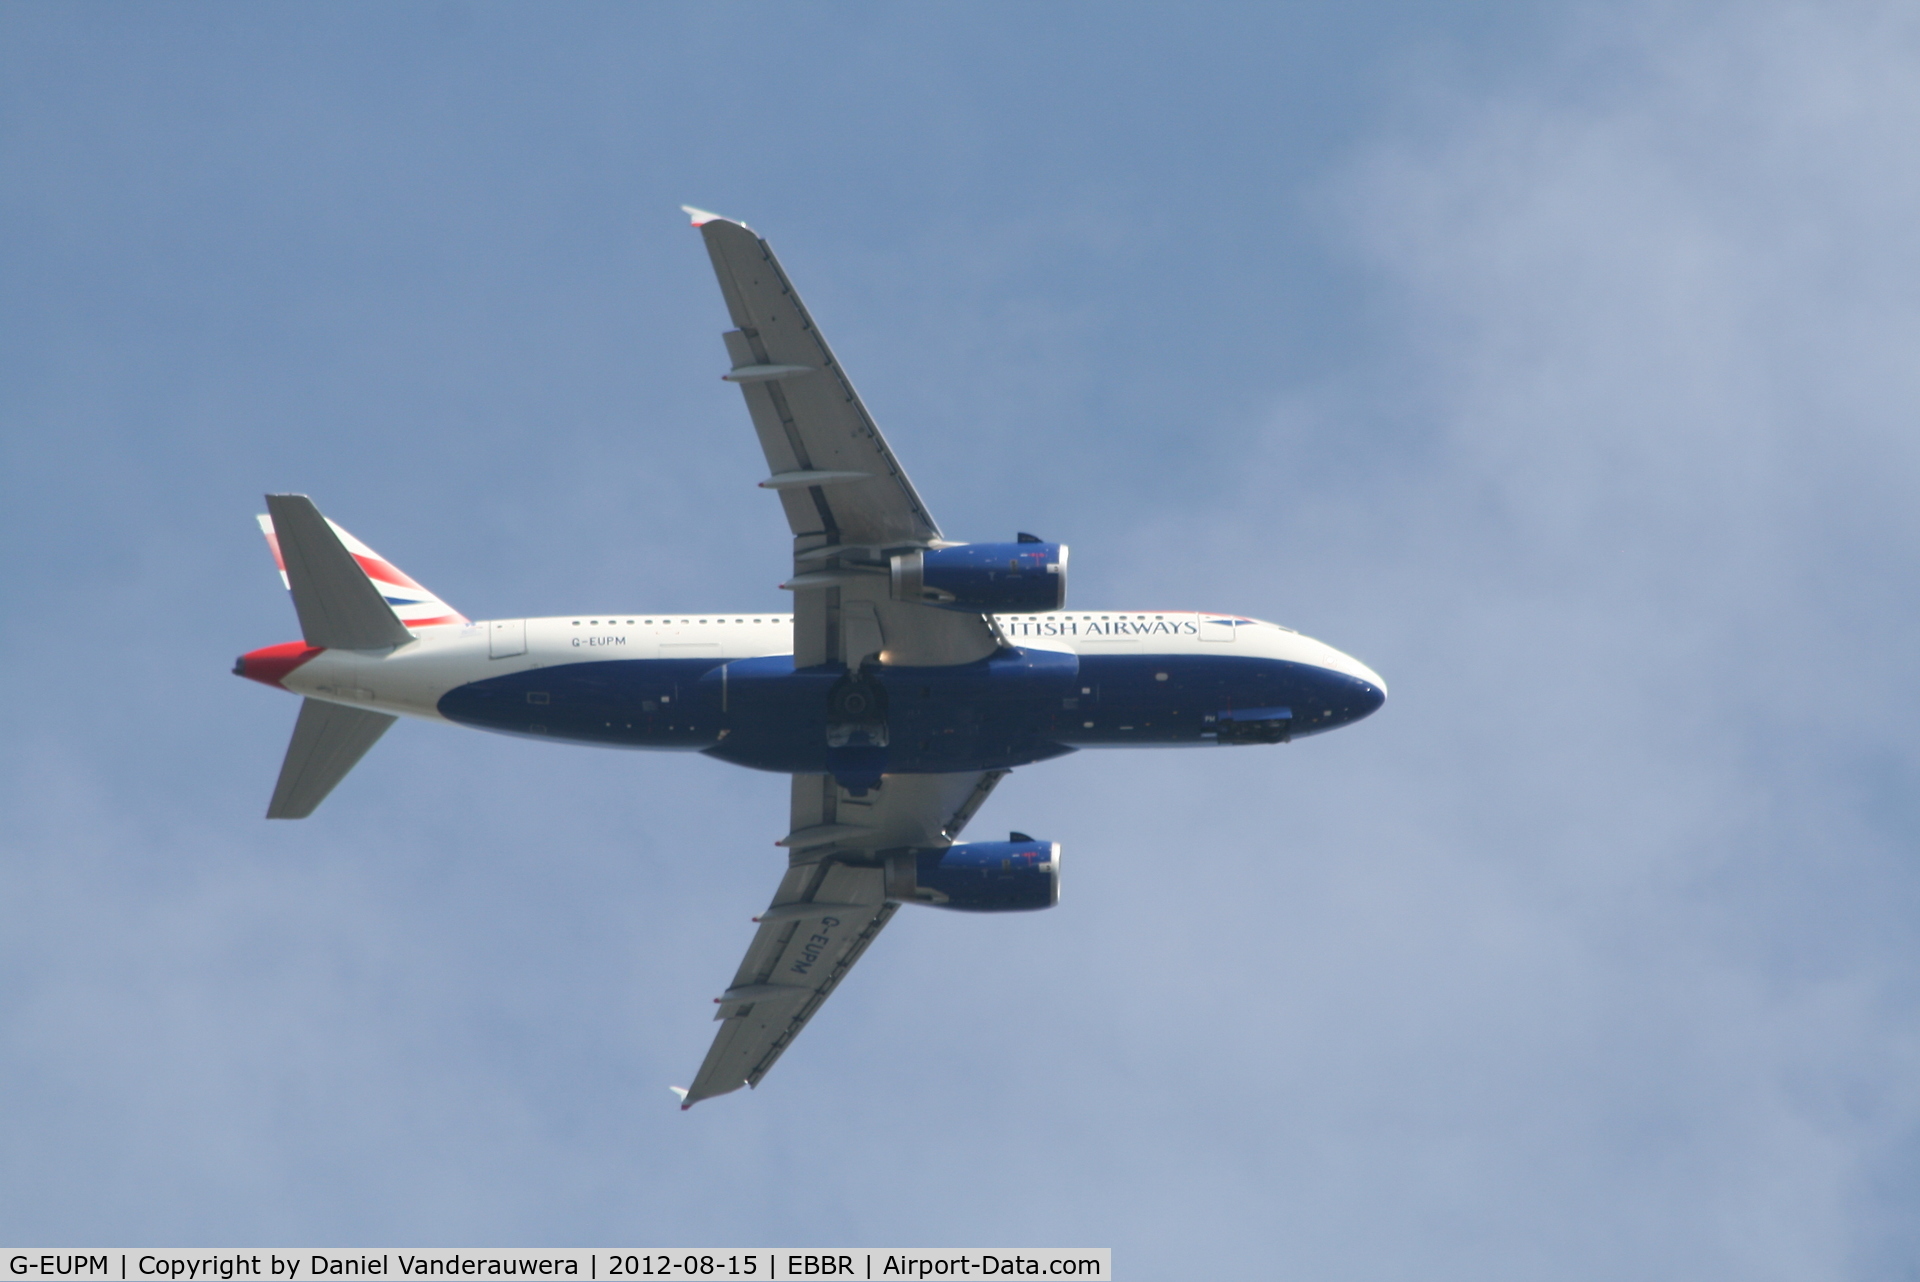 G-EUPM, 2000 Airbus A319-131 C/N 1258, Flight BA392 on approach to RWY 07L